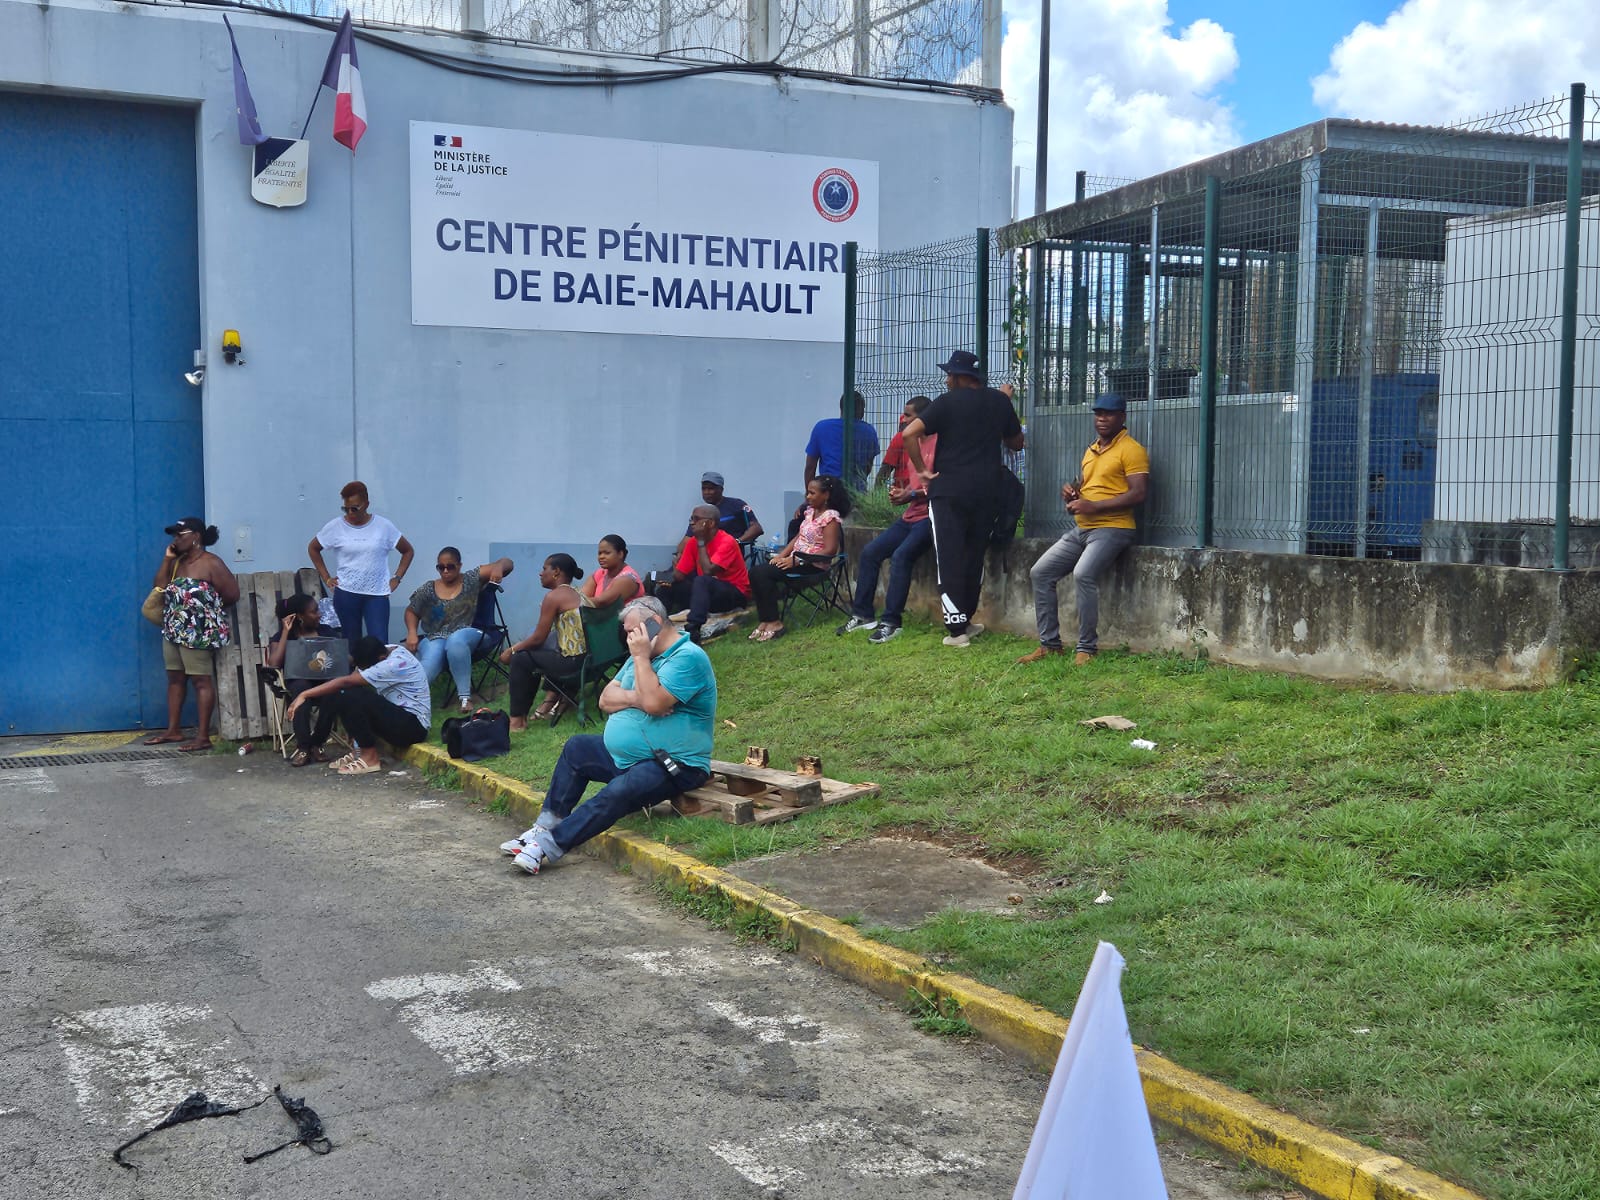     Mobilisation à Fond Sarail : les agents attendent un retour de l’administration pénitentiaire

